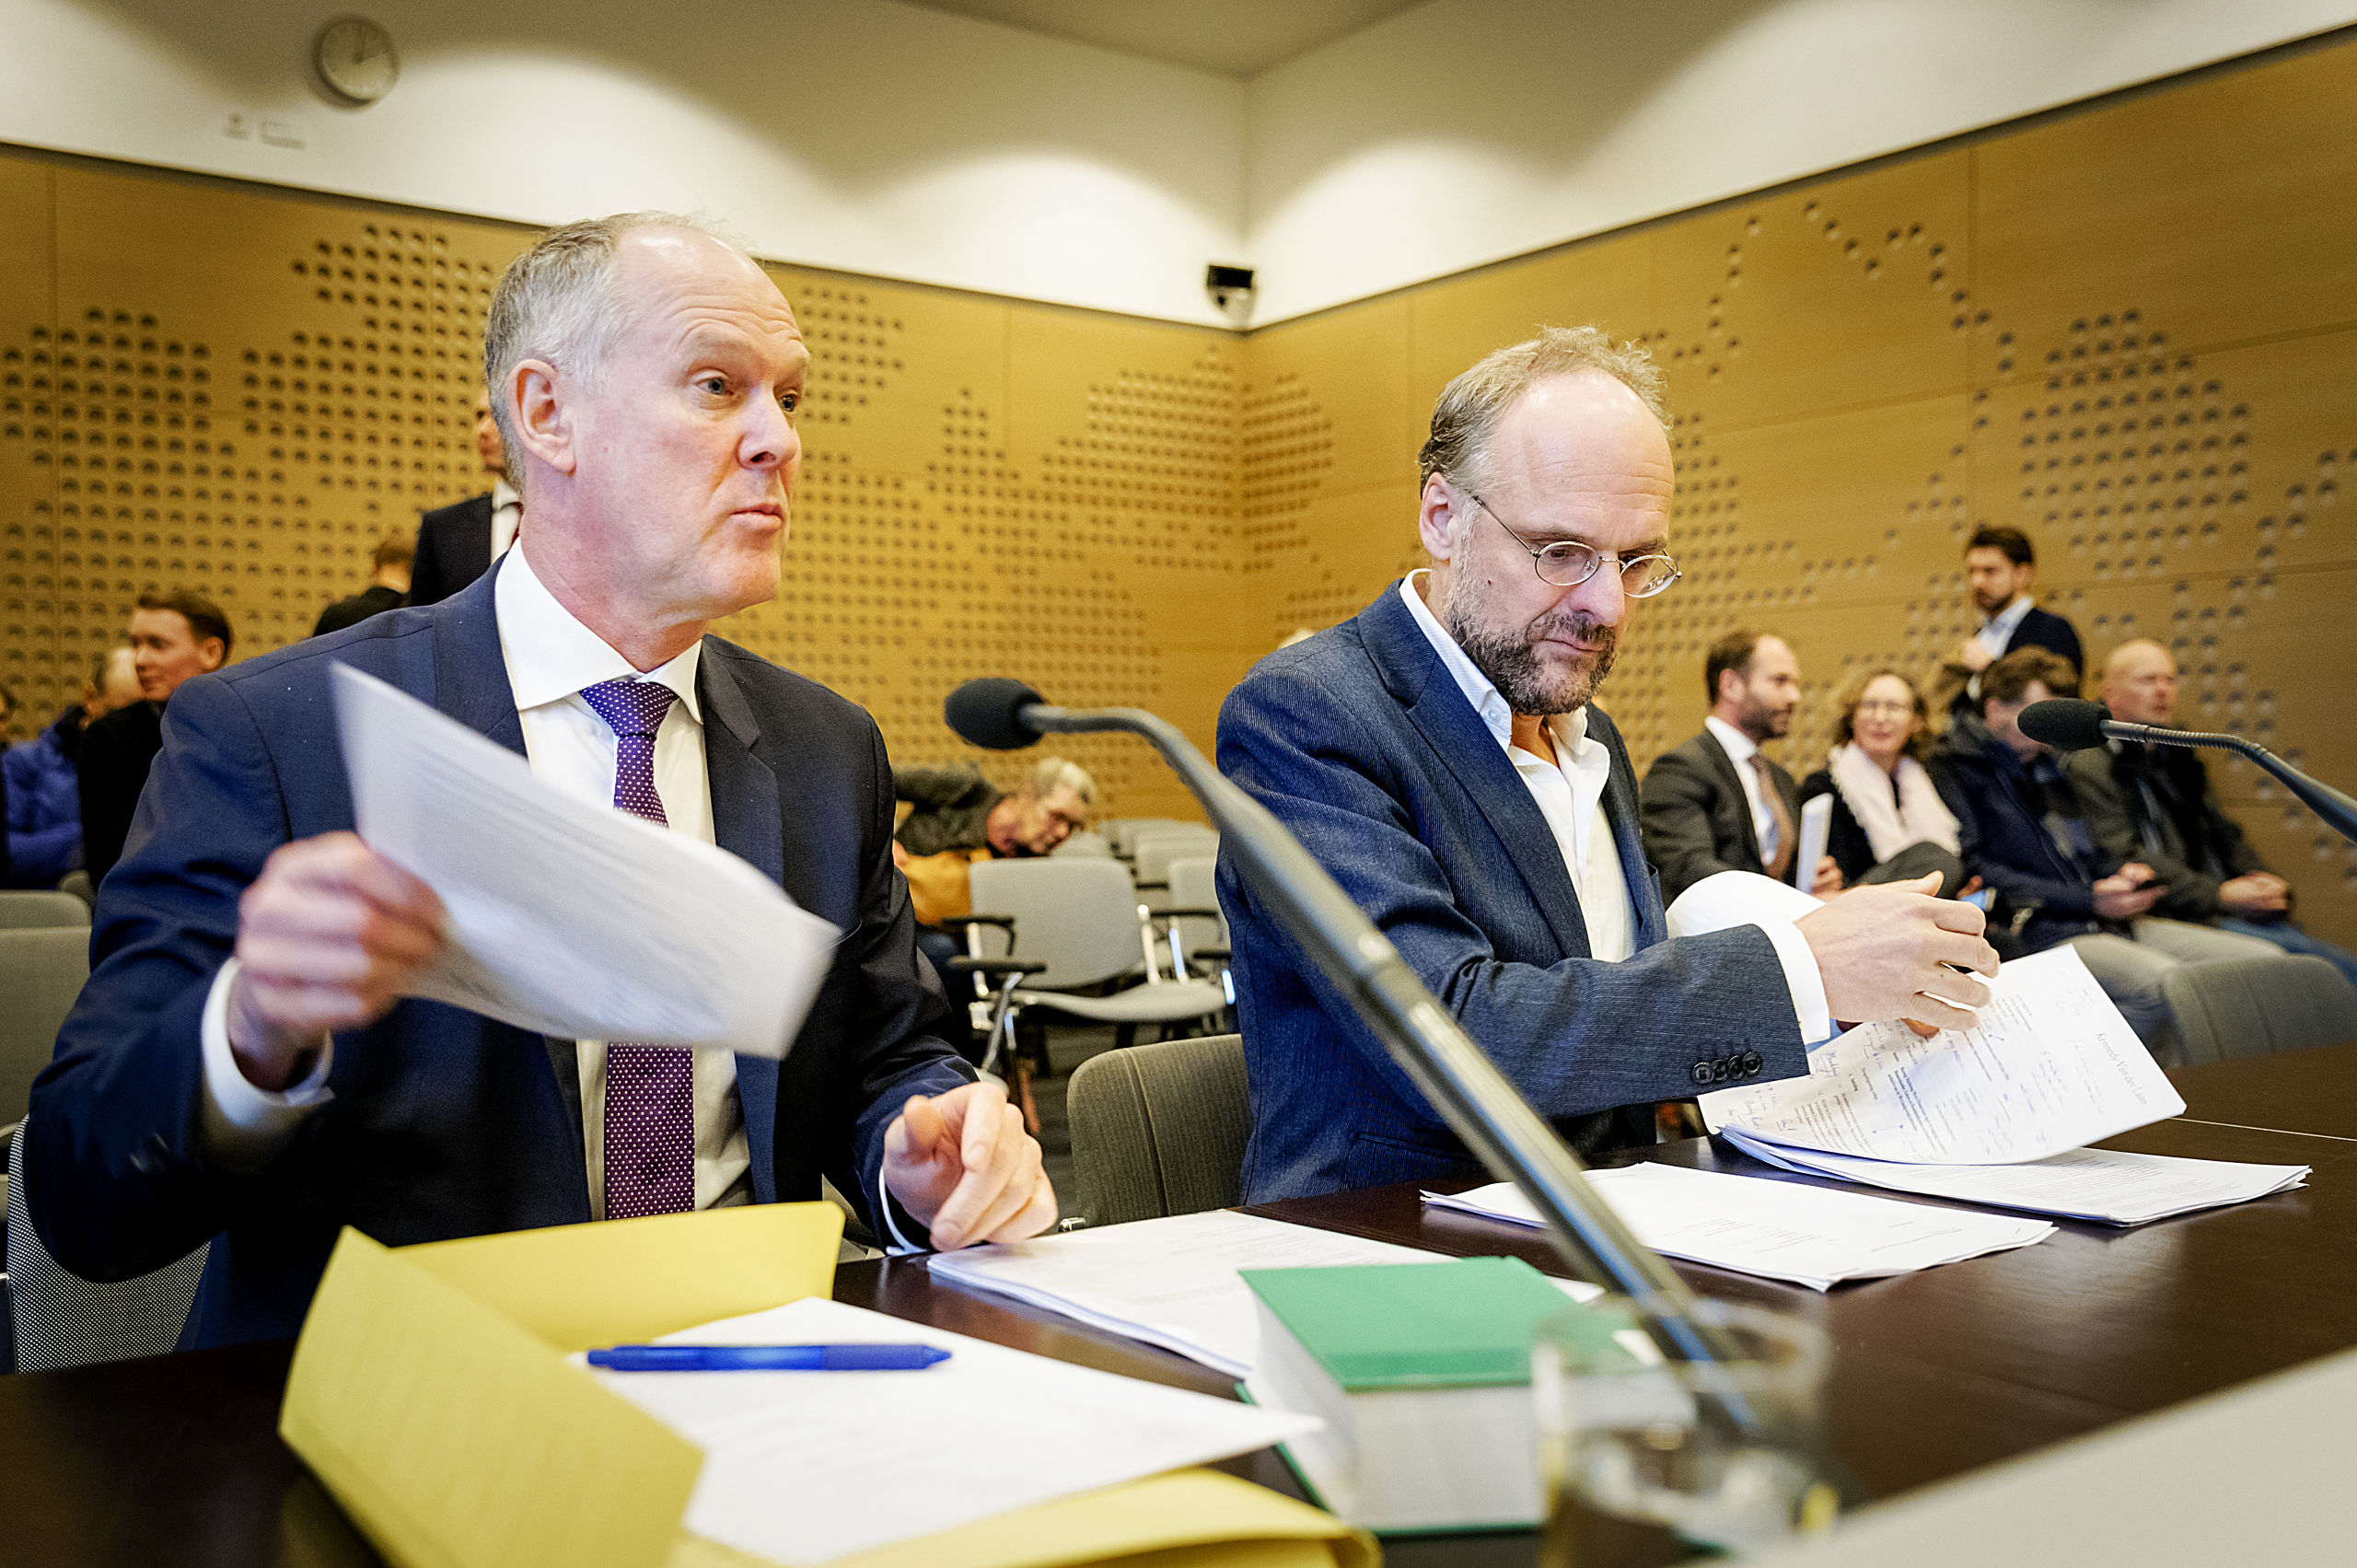 Niesco Dubbelboer (R) van belangengroep Meer Democratie en advocaat Jan van der Grinten (L) voorafgaand aan een eerdere rechtszaak over het afschaffing van het raadgevend referendum. 